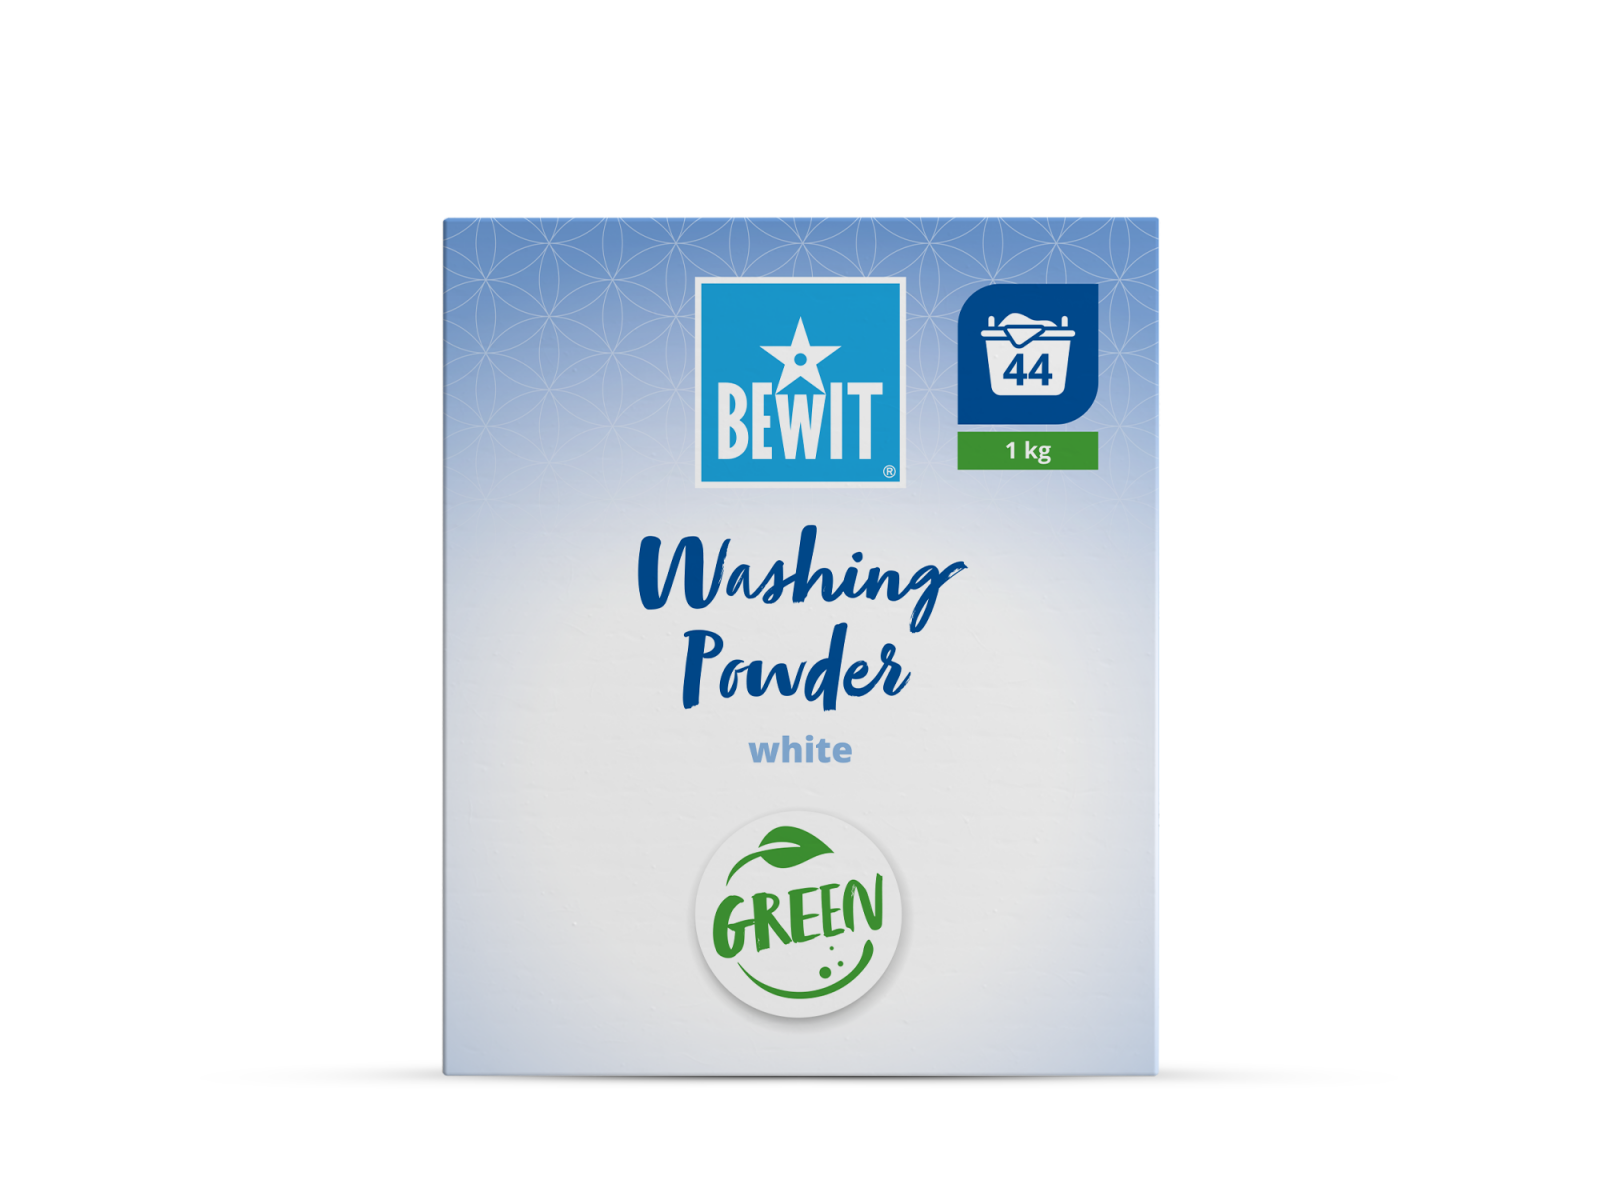 BEWIT Washing Powder White - Laundry detergents - 4